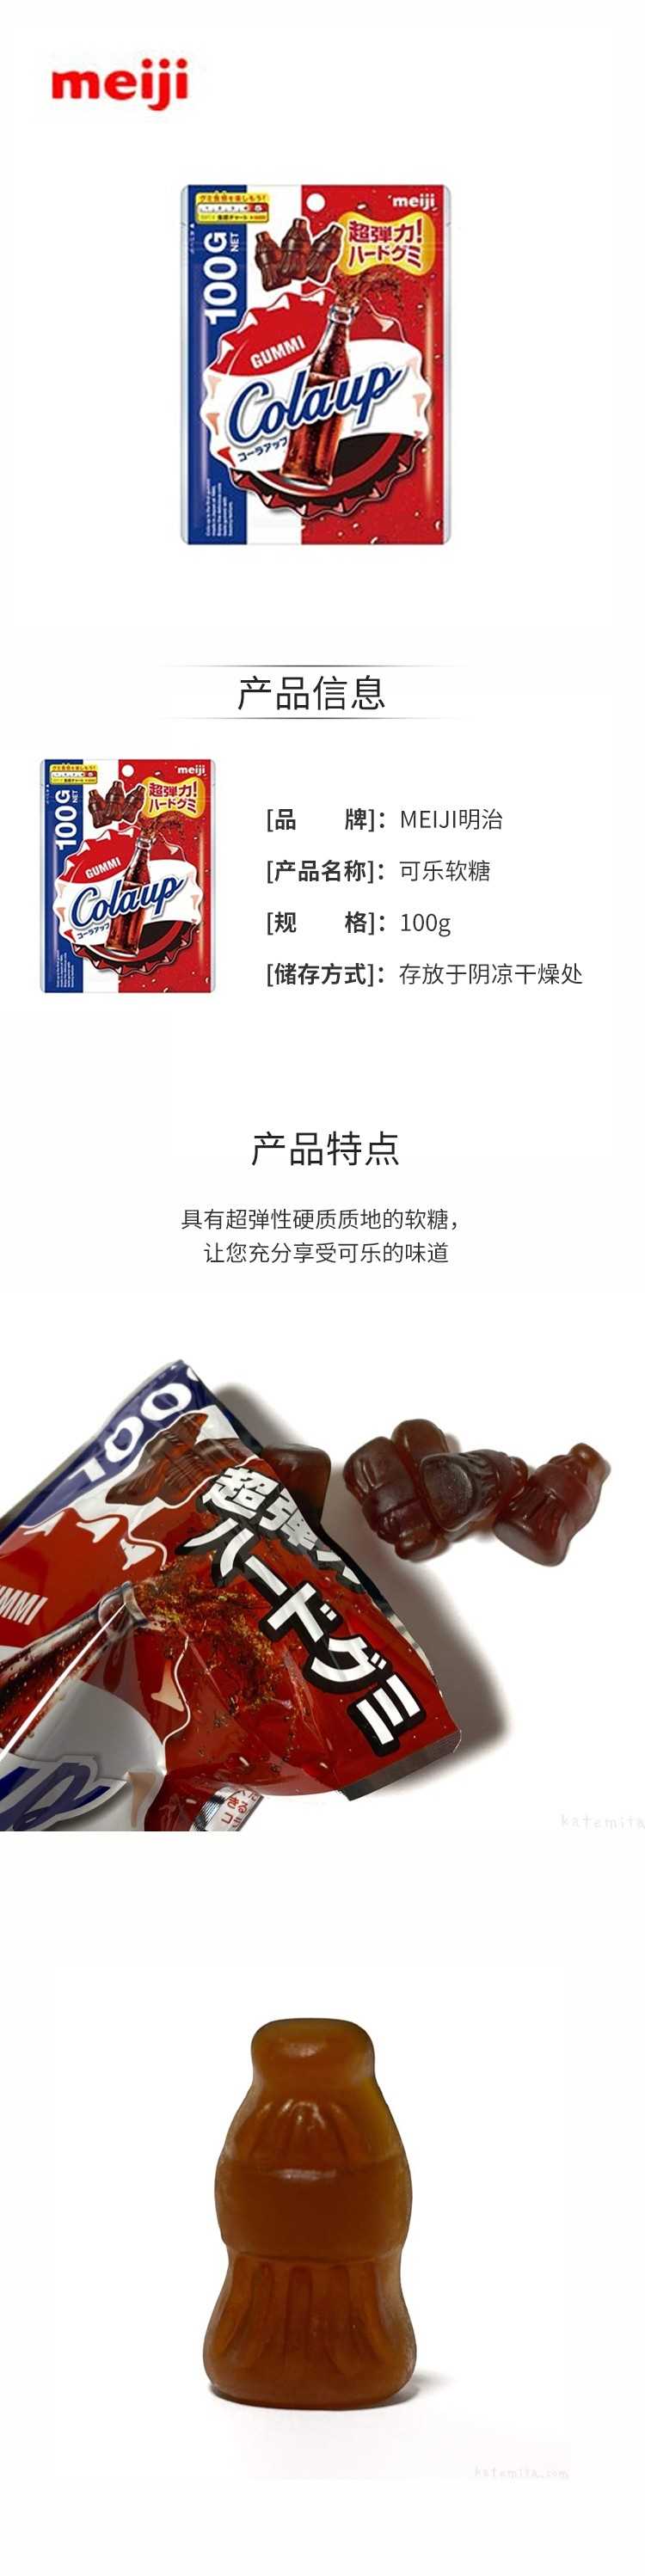 【日版】MEIJI明治-可乐软糖100g.jpg